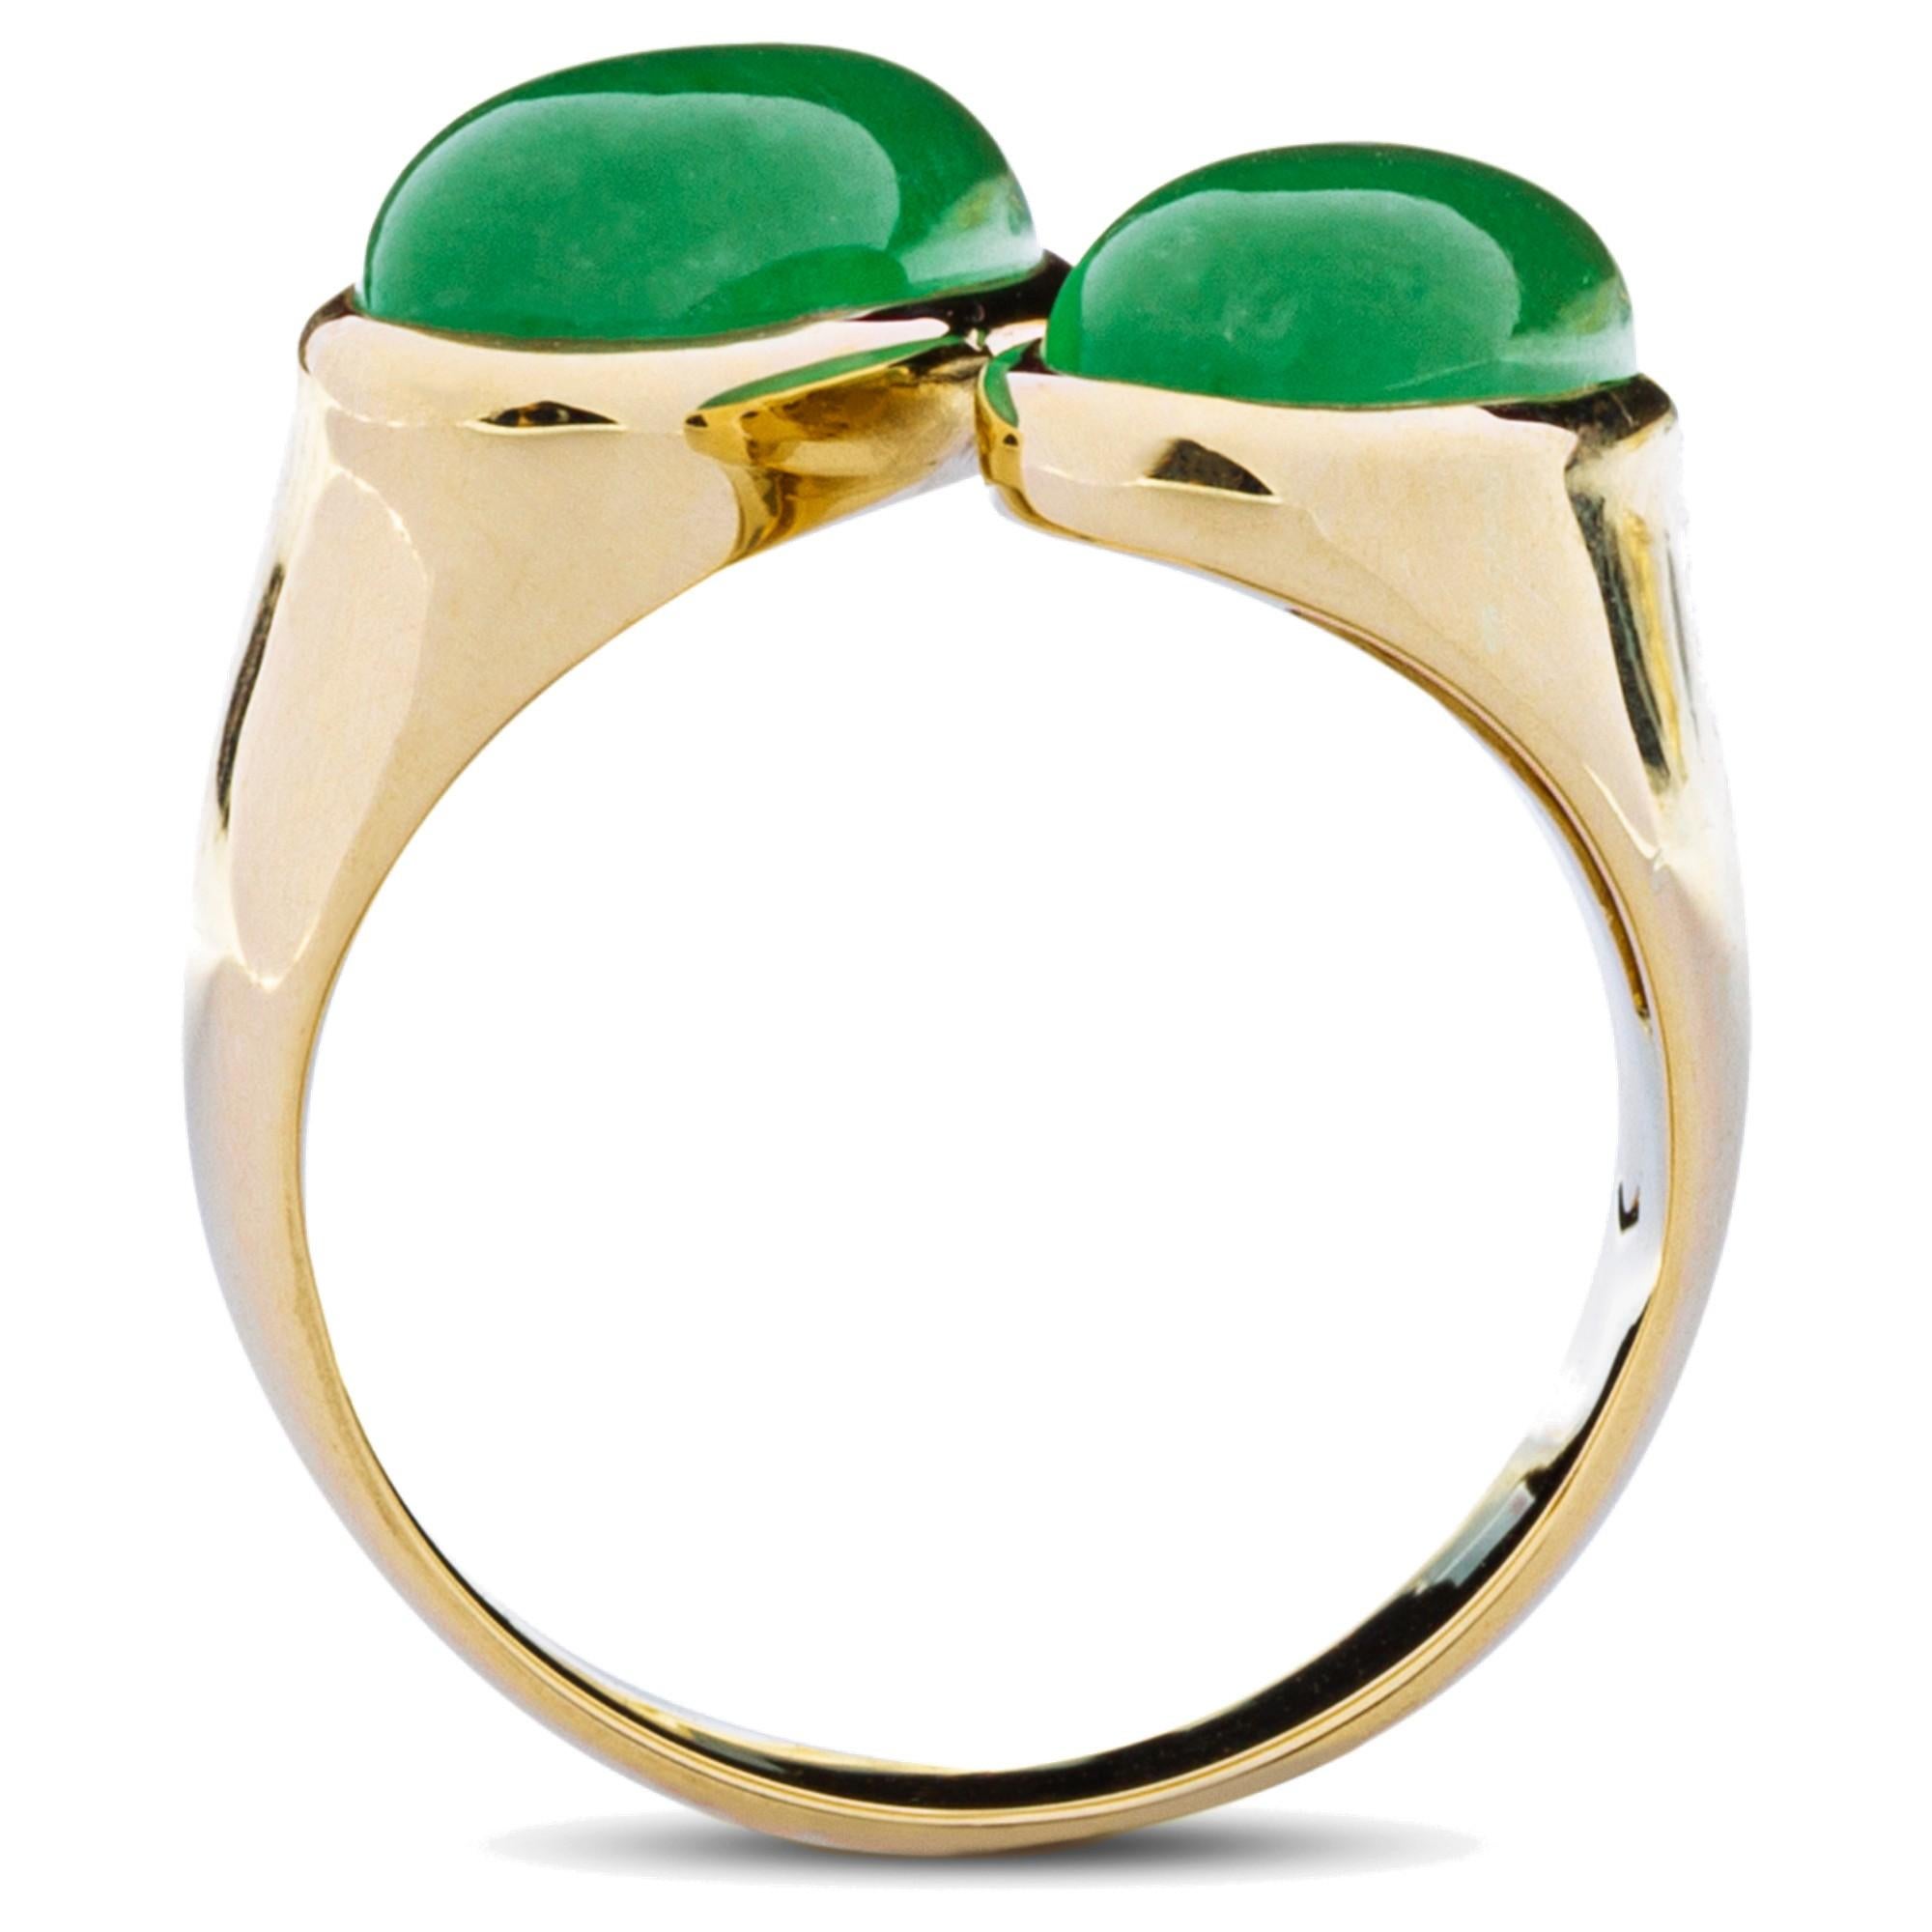 Oval Cut Alex Jona Natural Burmese Jadeite Jade 18 Karat Yellow Gold Ring